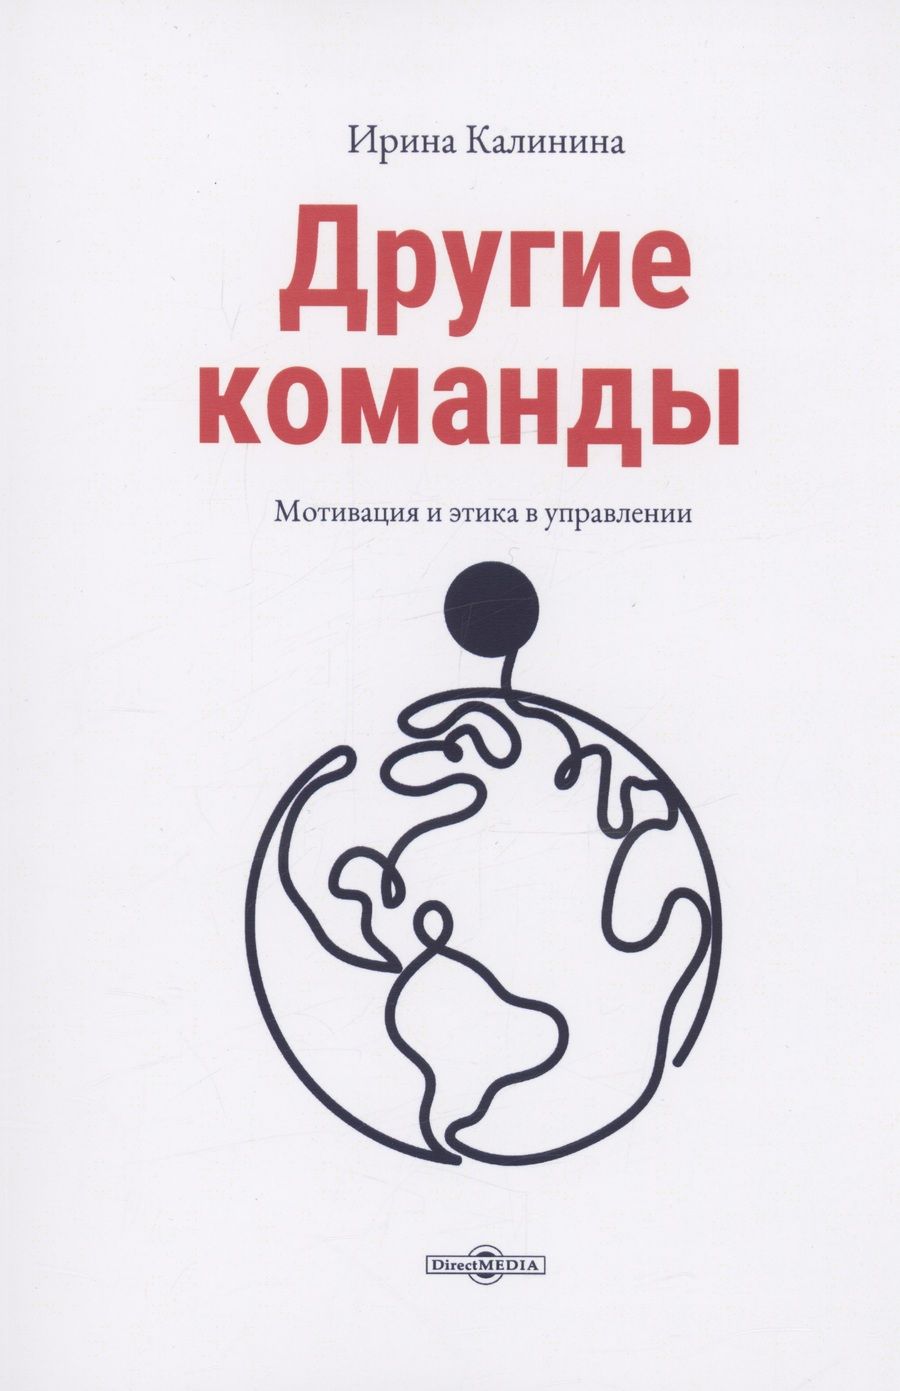 Обложка книги "Калинина: Другие команды"